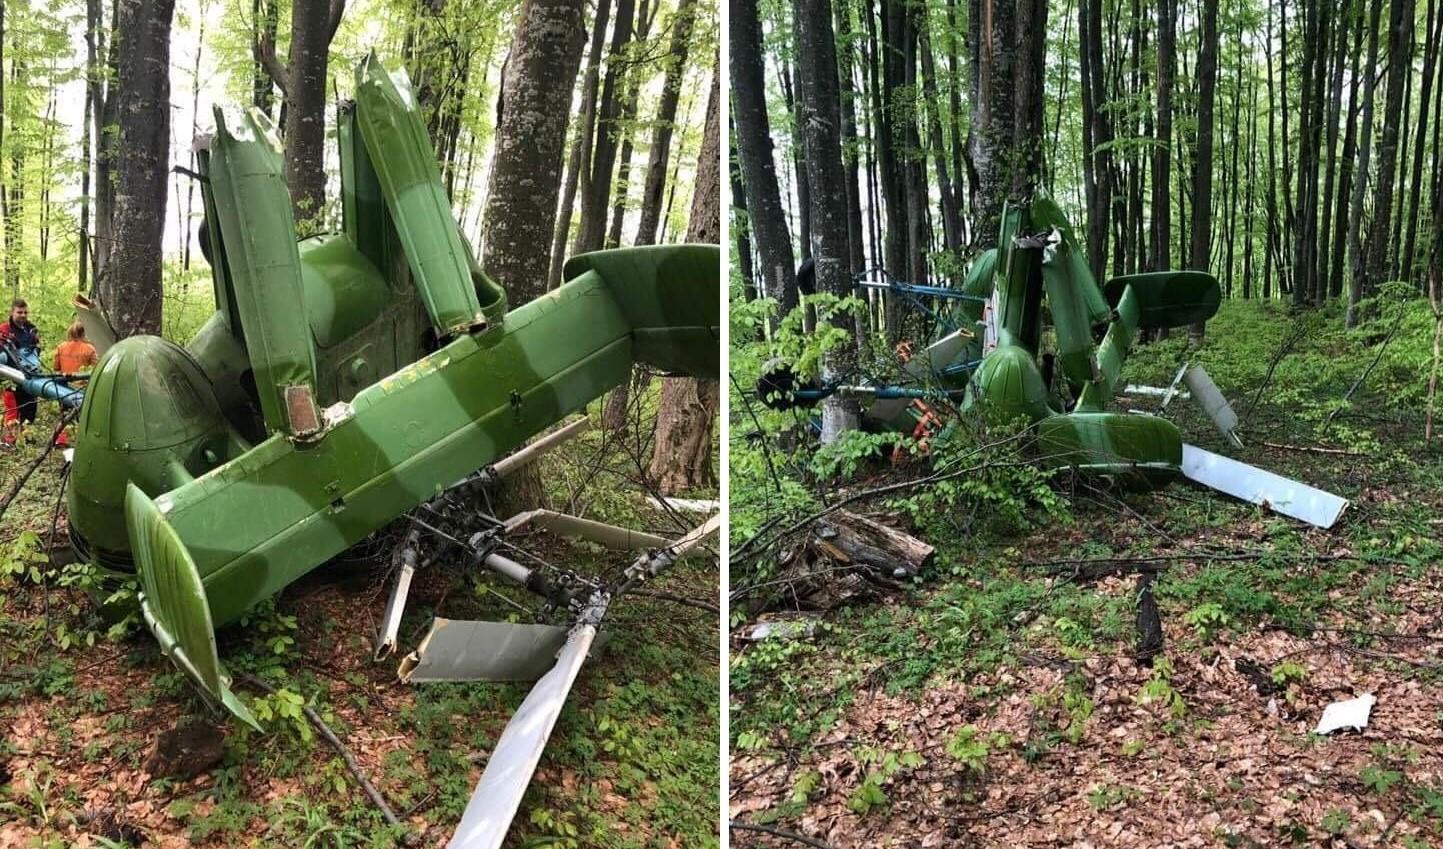 Epava elicopterului prăbușit lângă Săpânța